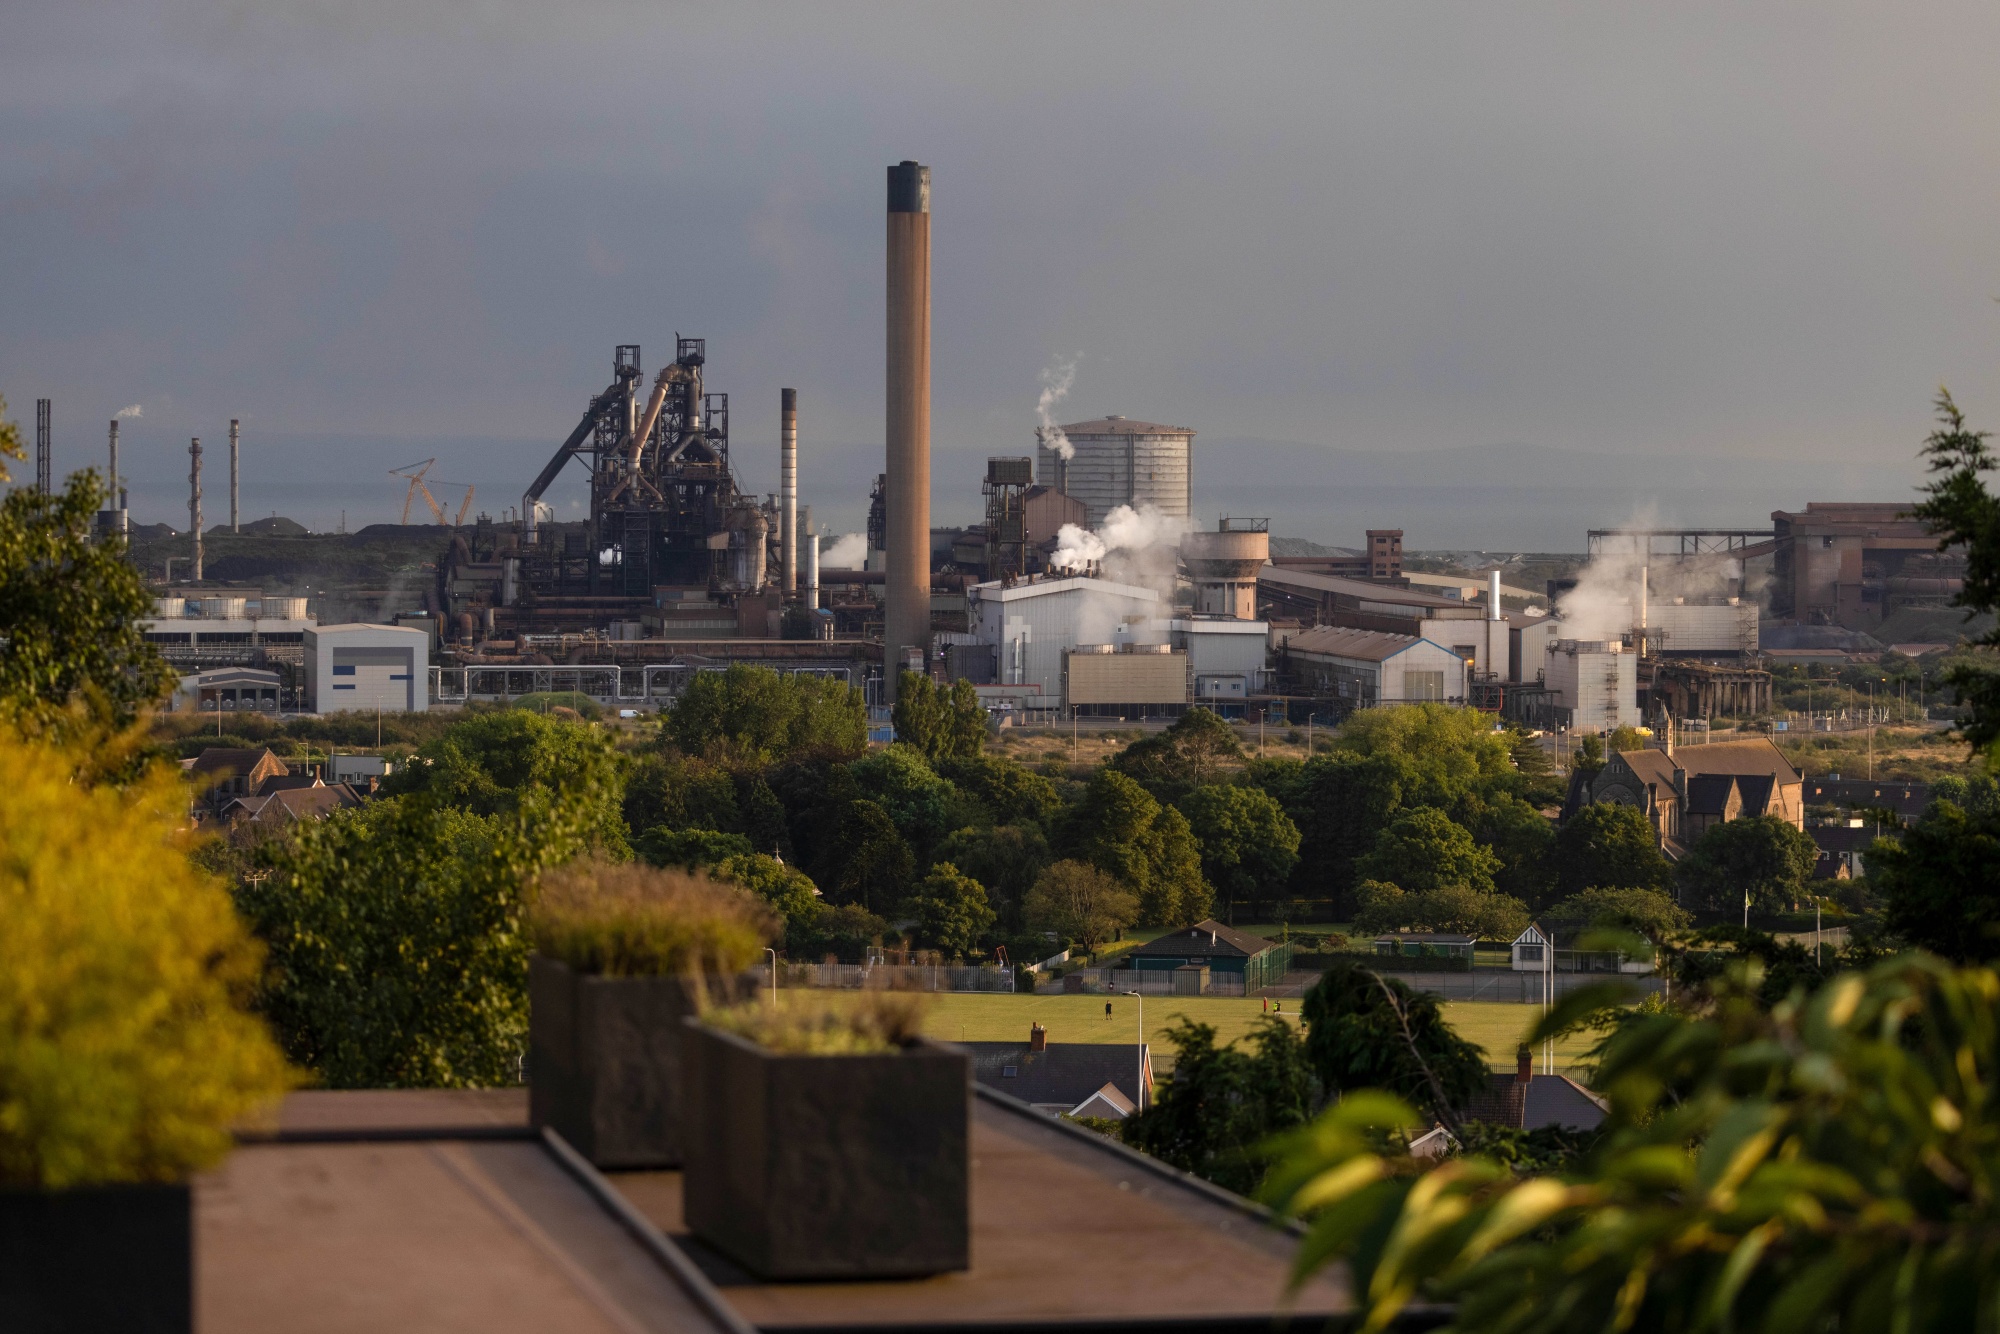 Tata Steel Job Cuts: Tata Steel unveils cost-cutting plans for Europe